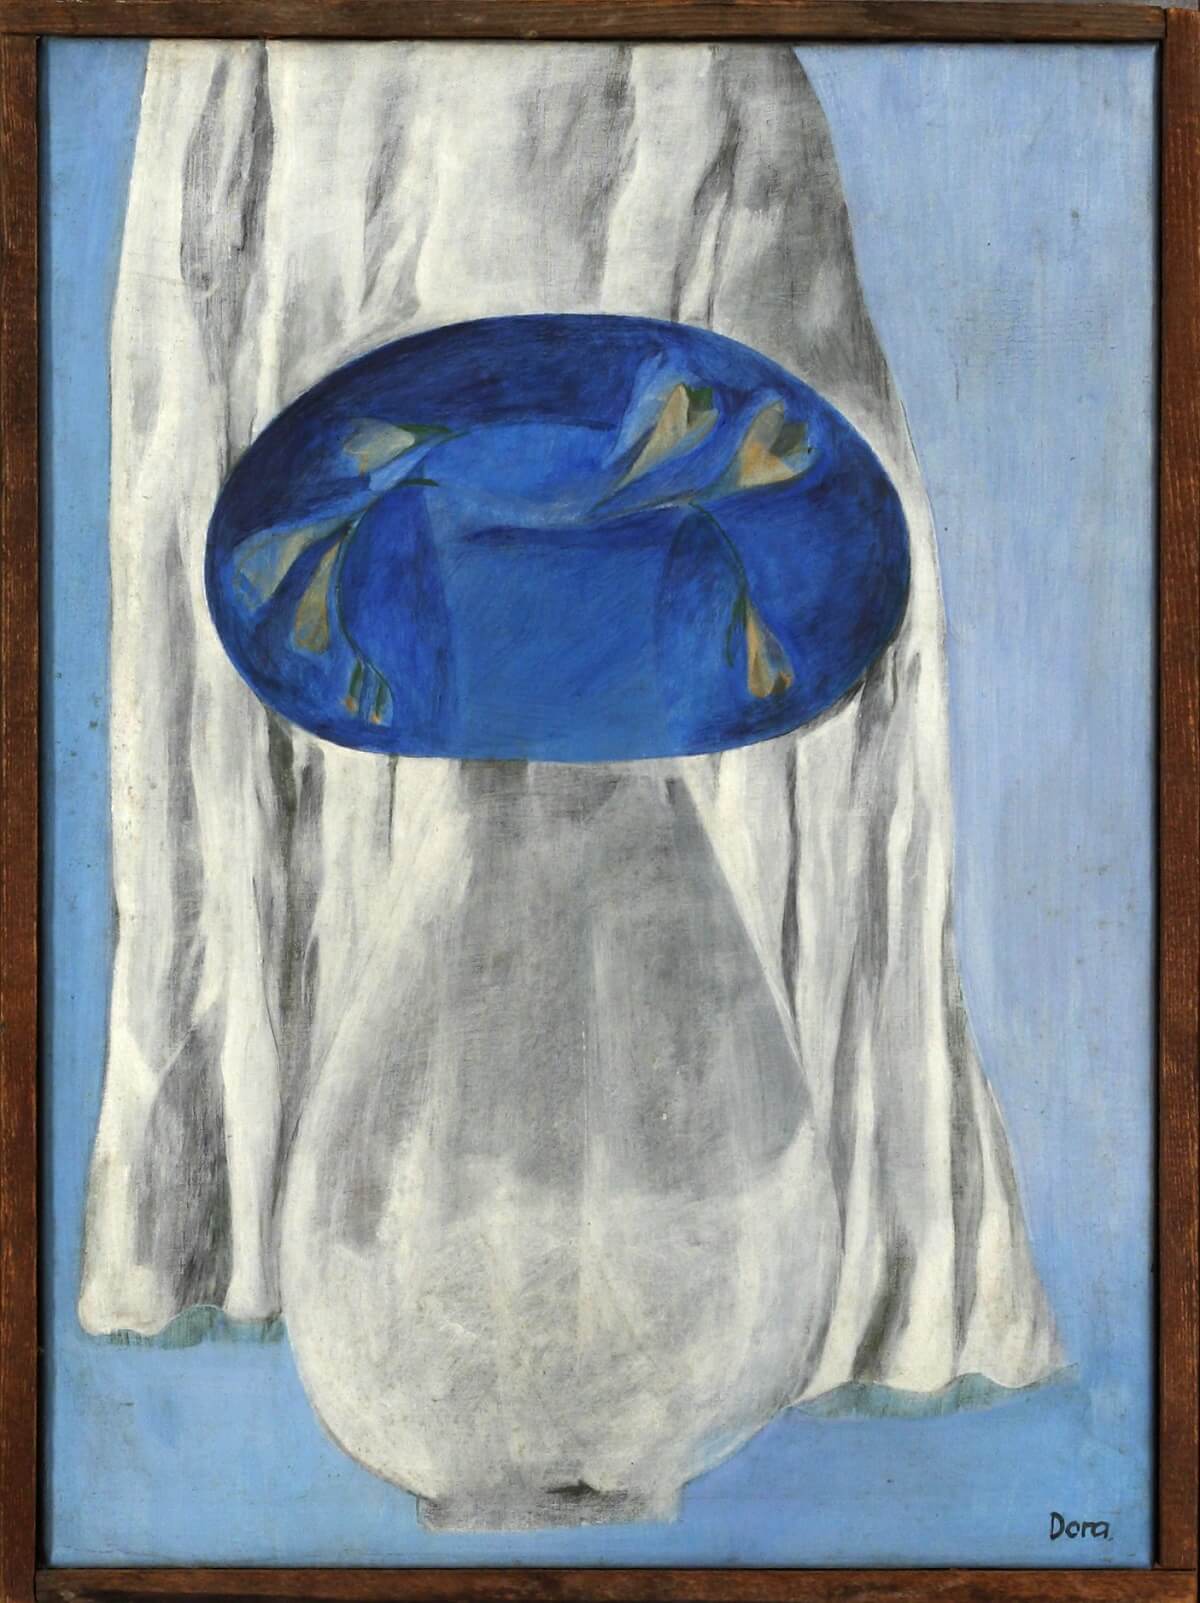 Dora Dolz. Jarrón con tela blanca y forma azul (238), c. 1977